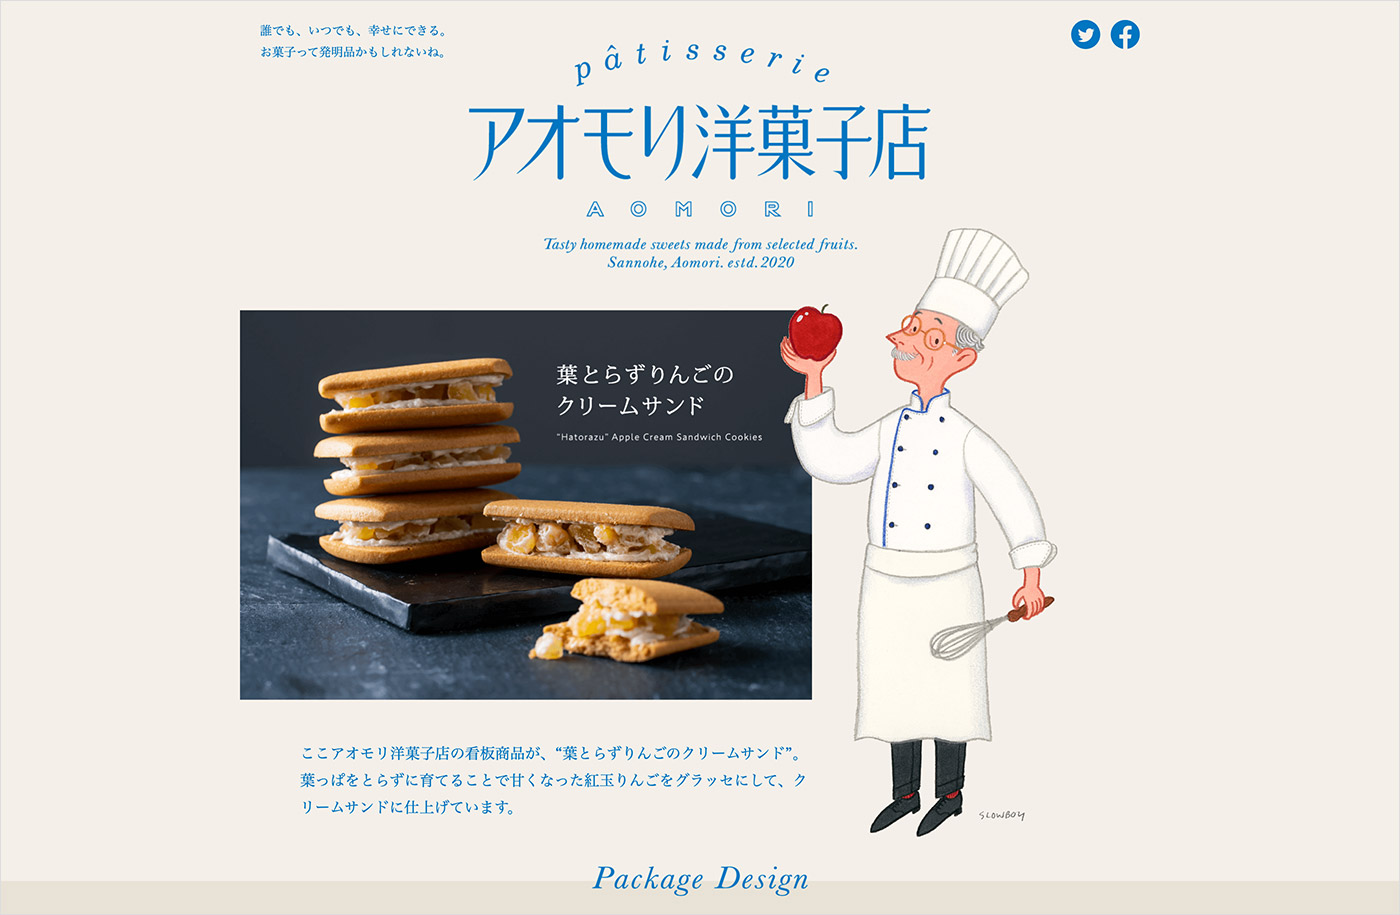 アオモリ洋菓子店ウェブサイトの画面キャプチャ画像